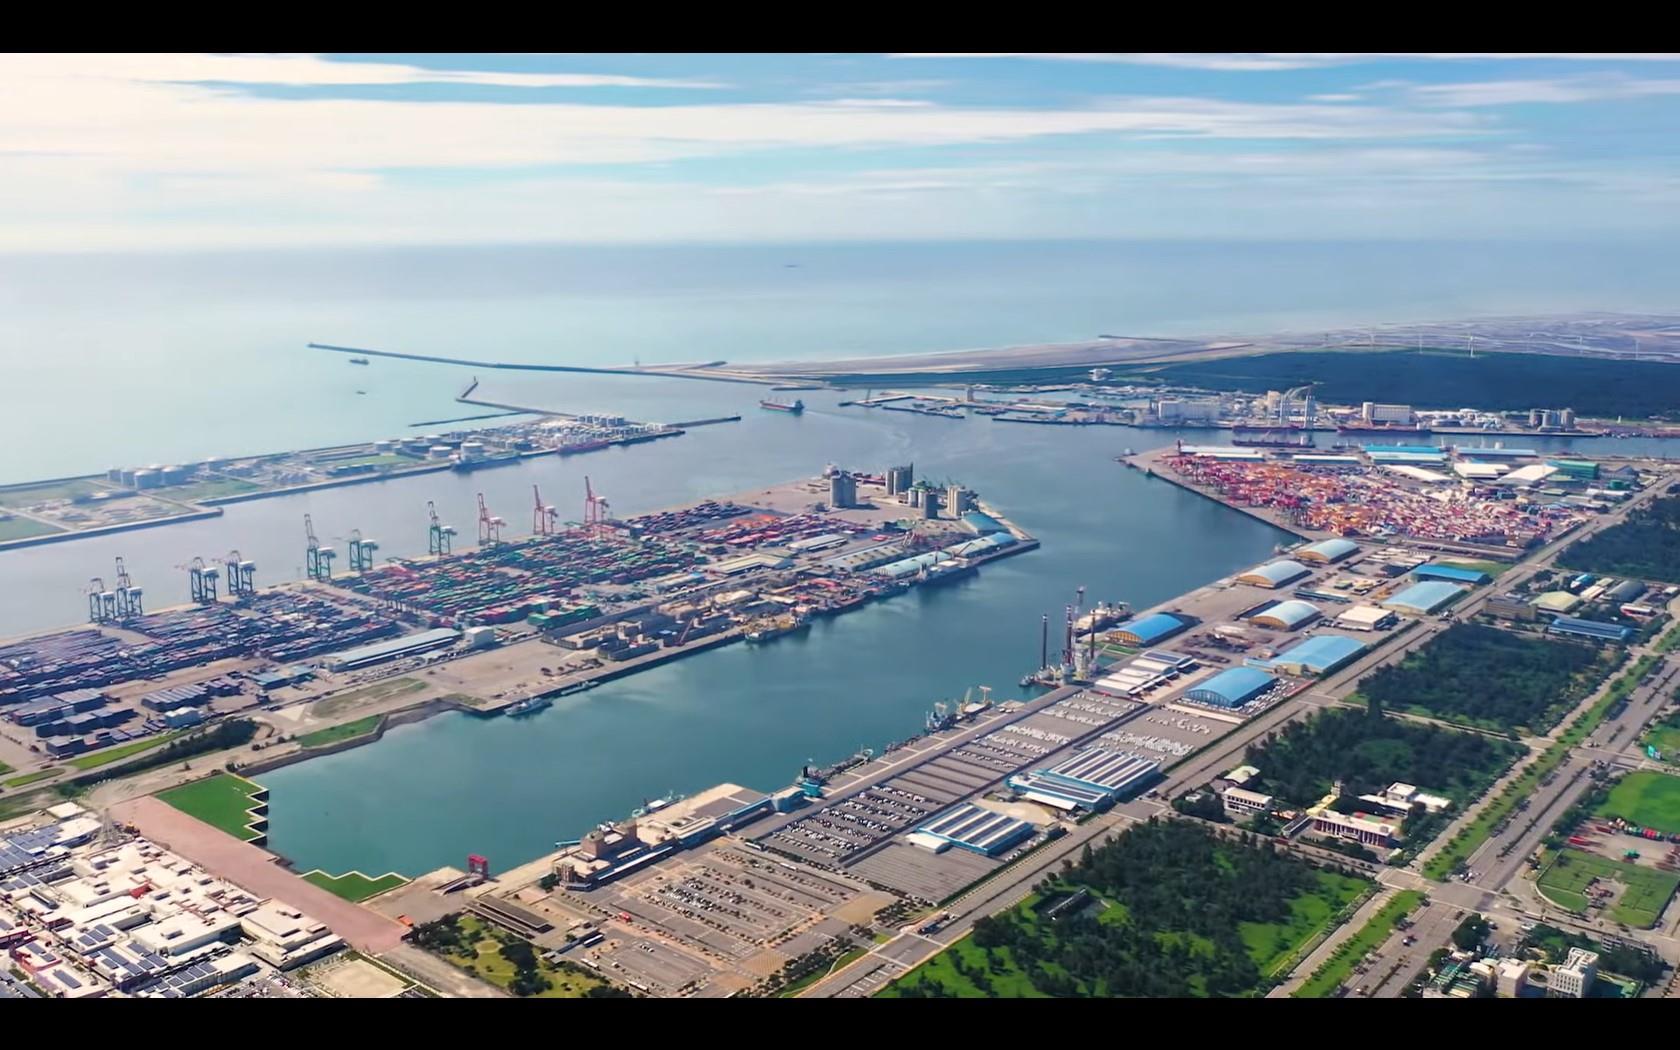 臺中港已成為結合商、工、漁及觀光業的國際港口